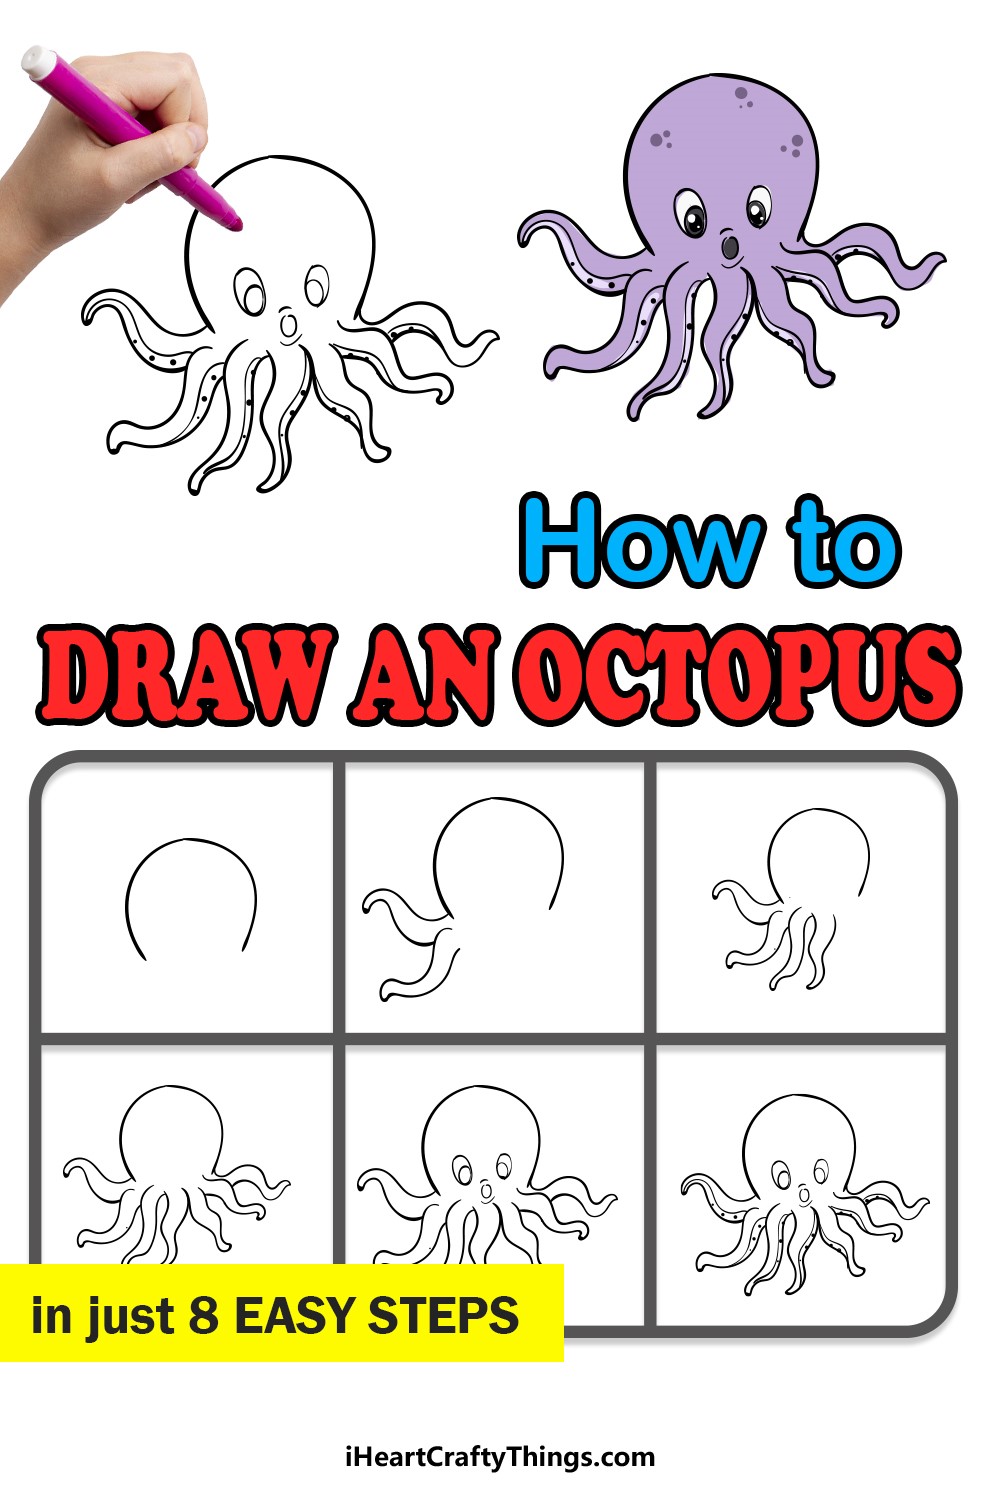 Oktopus-Idee 2 zeichnen ideen